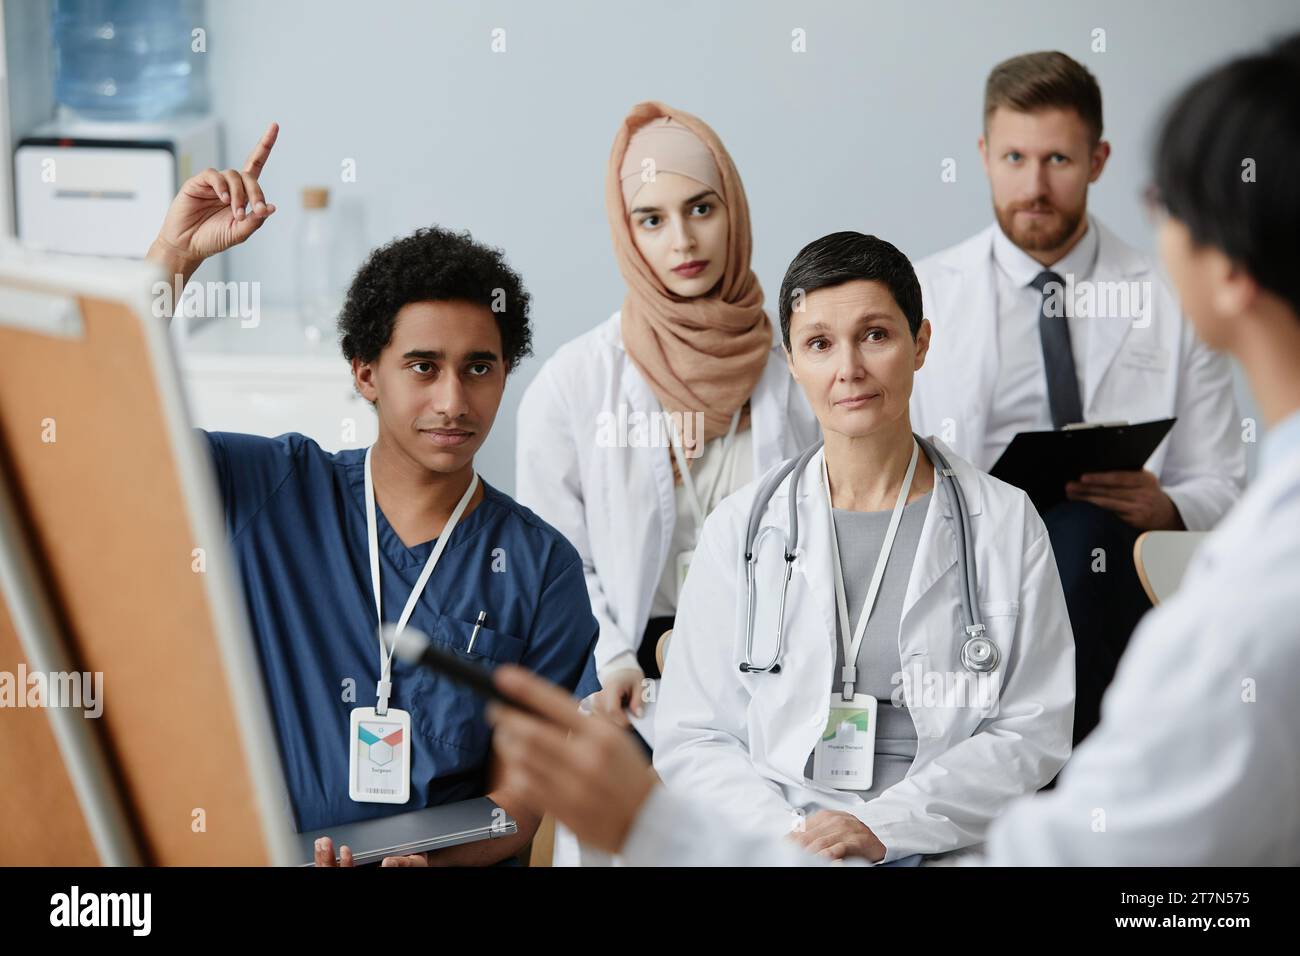 Ritratto di giovane uomo mediorientale alzando la mano in pubblico al seminario medico Foto Stock